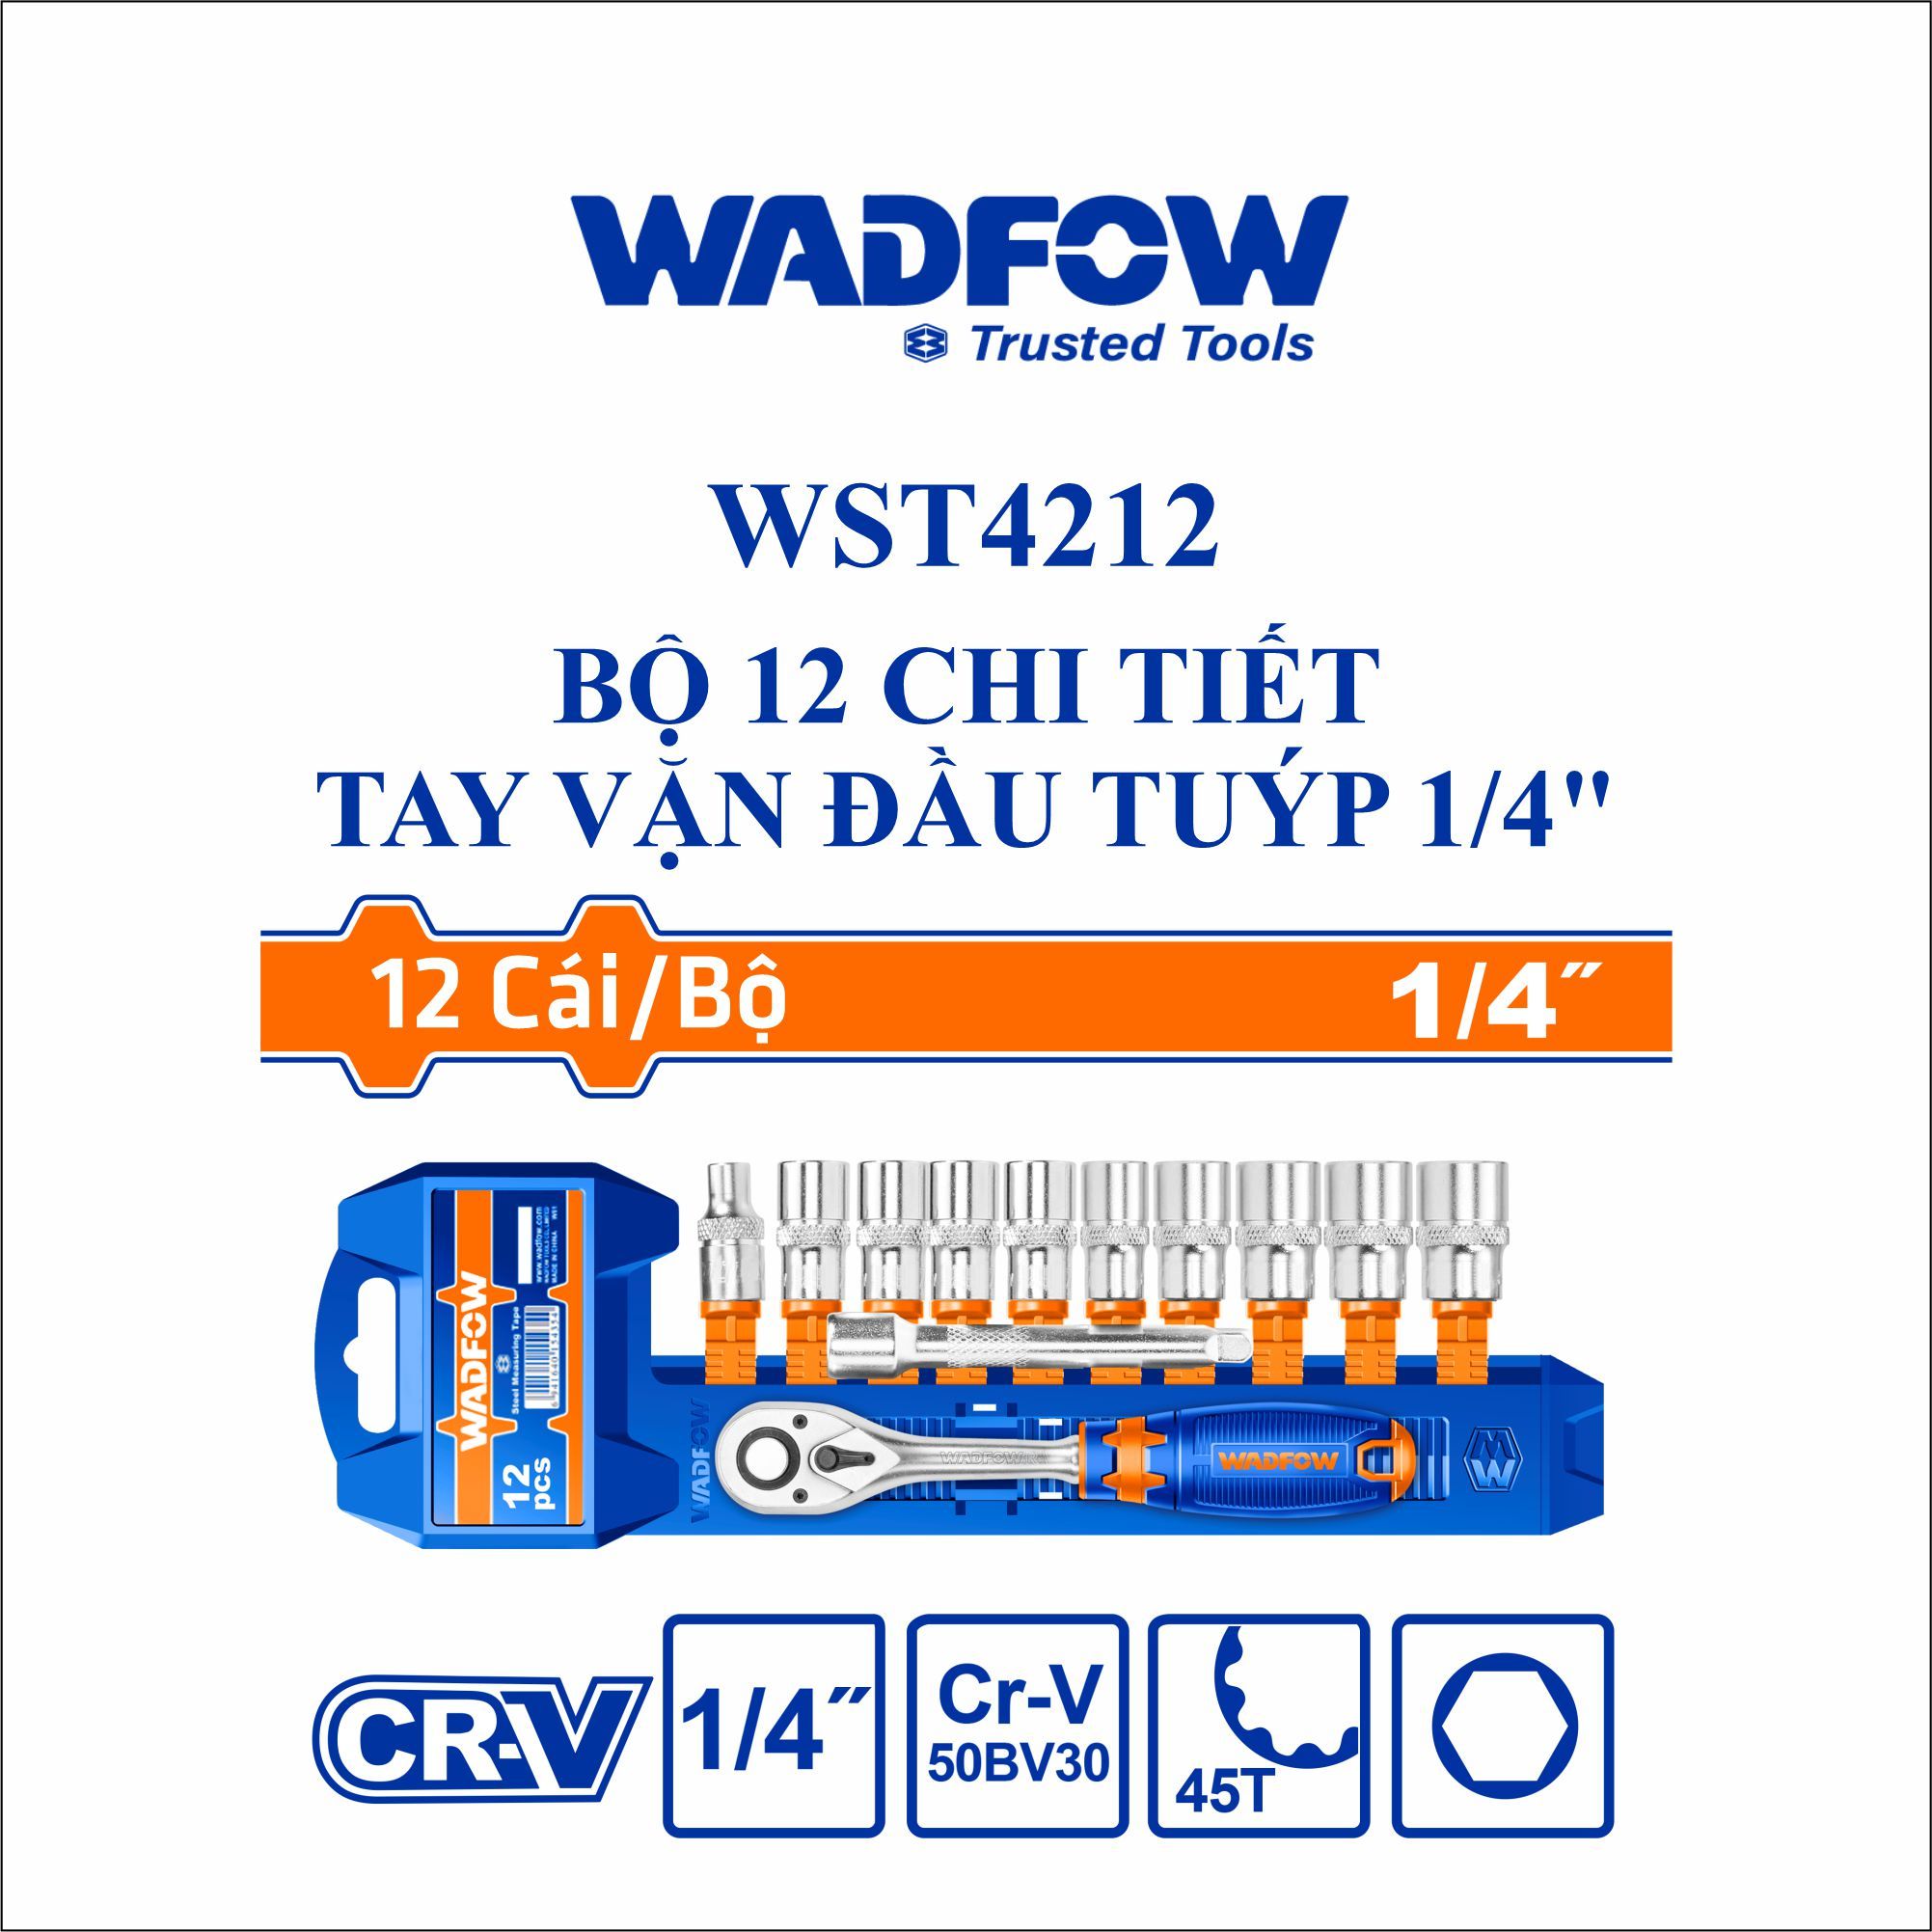  Bộ 12 chi tiết tay vặn đầu tuýp 1/4 Inch  WADFOW WST4212 